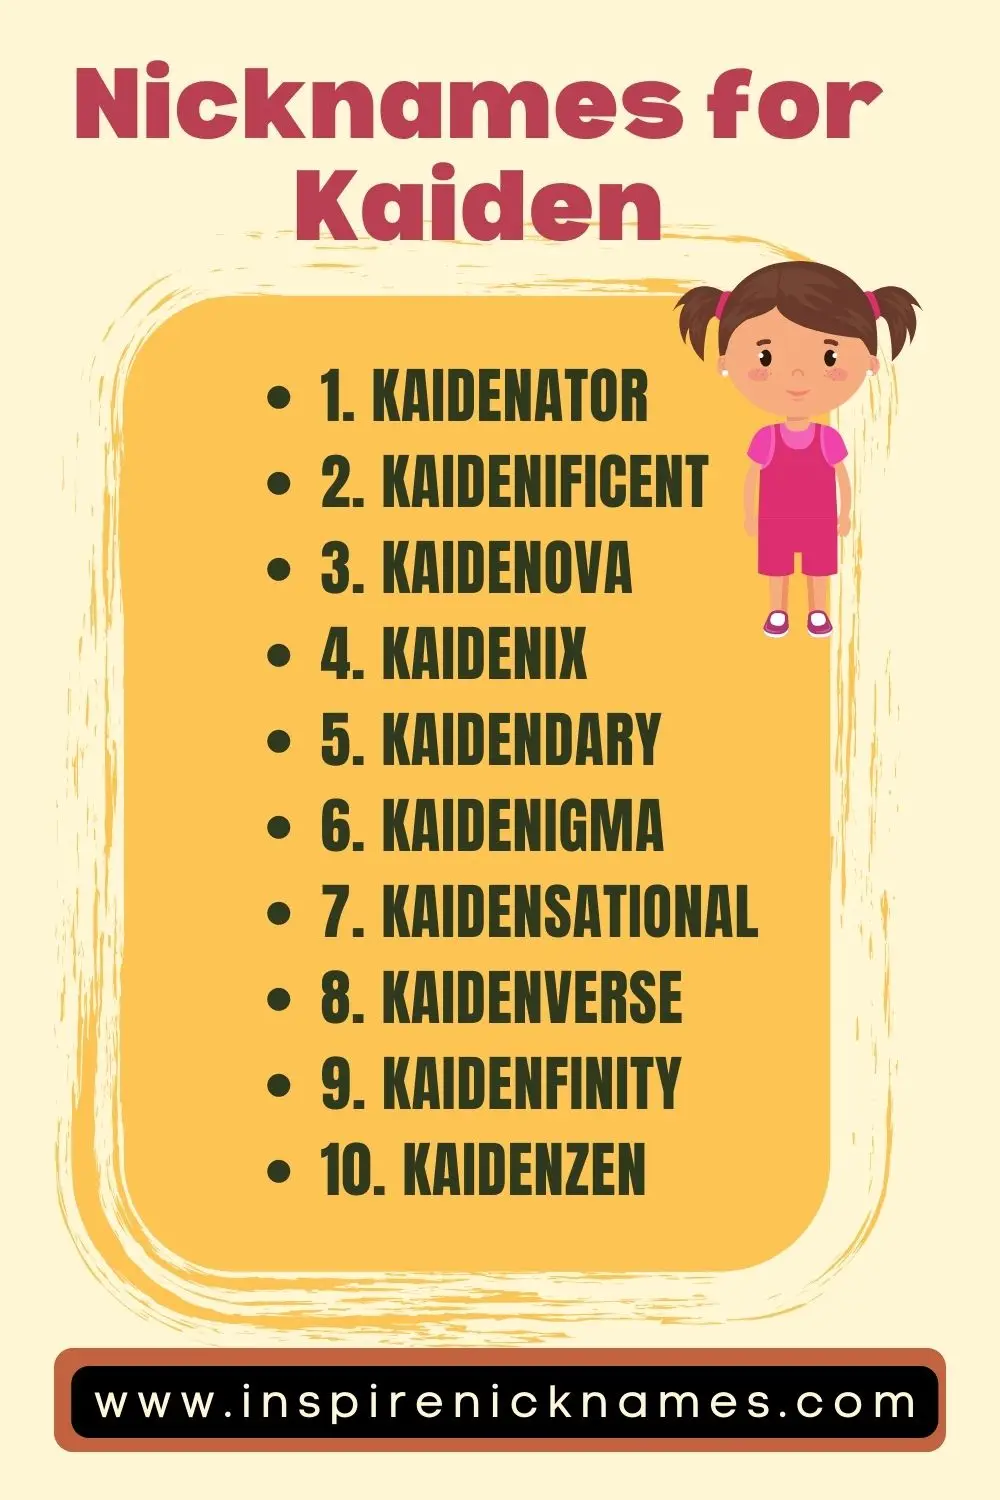 nicknames for kaiden list ideas